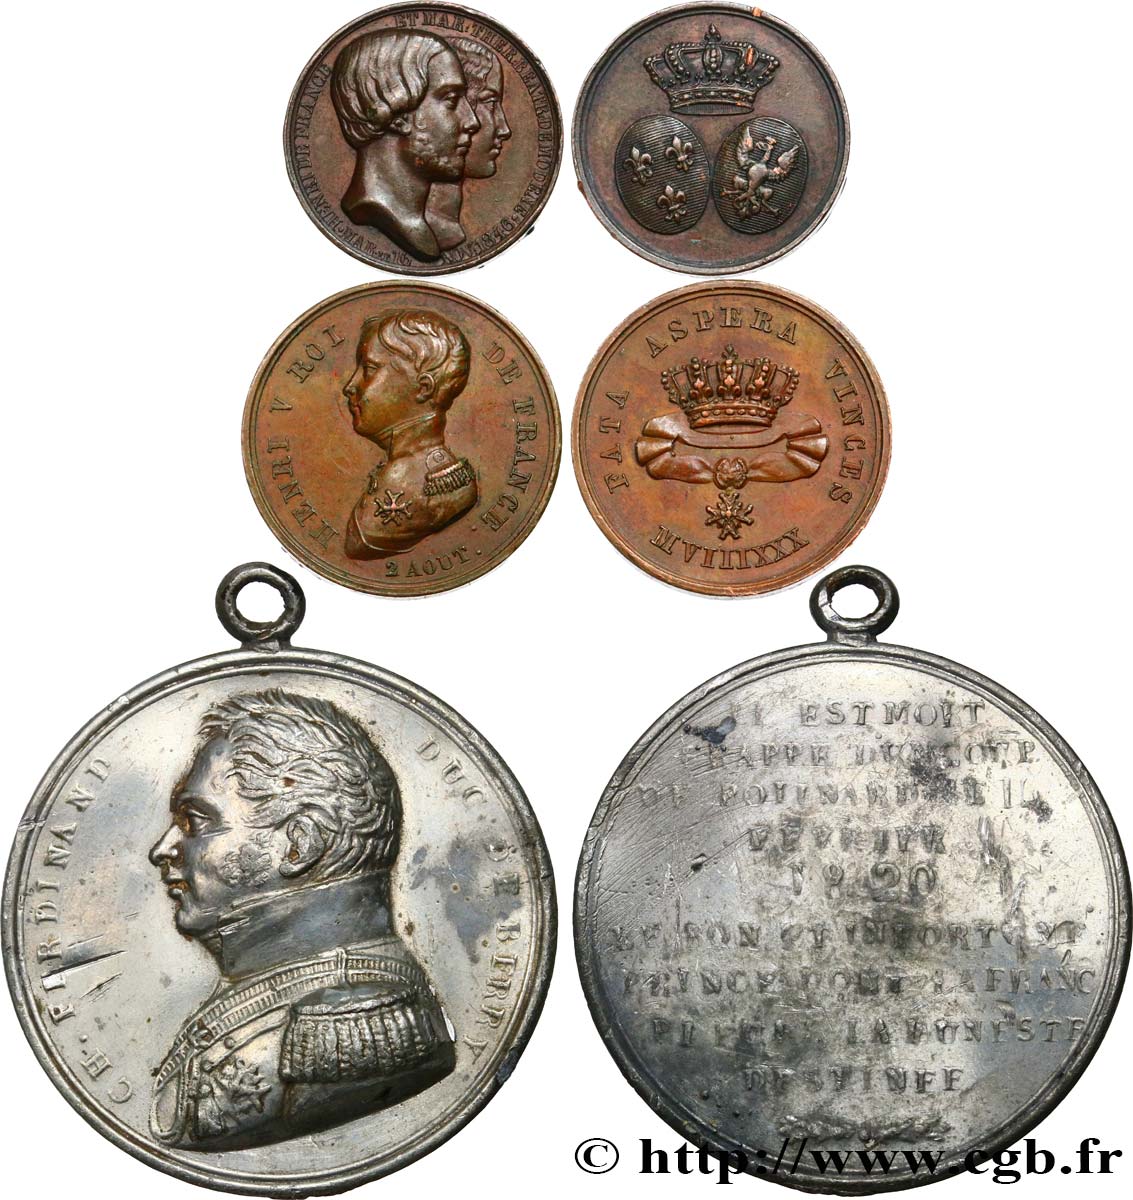 HENRI V COMTE DE CHAMBORD Lot de 3 médailles relatives à la vie d’Henri V, comte de Chambord XF